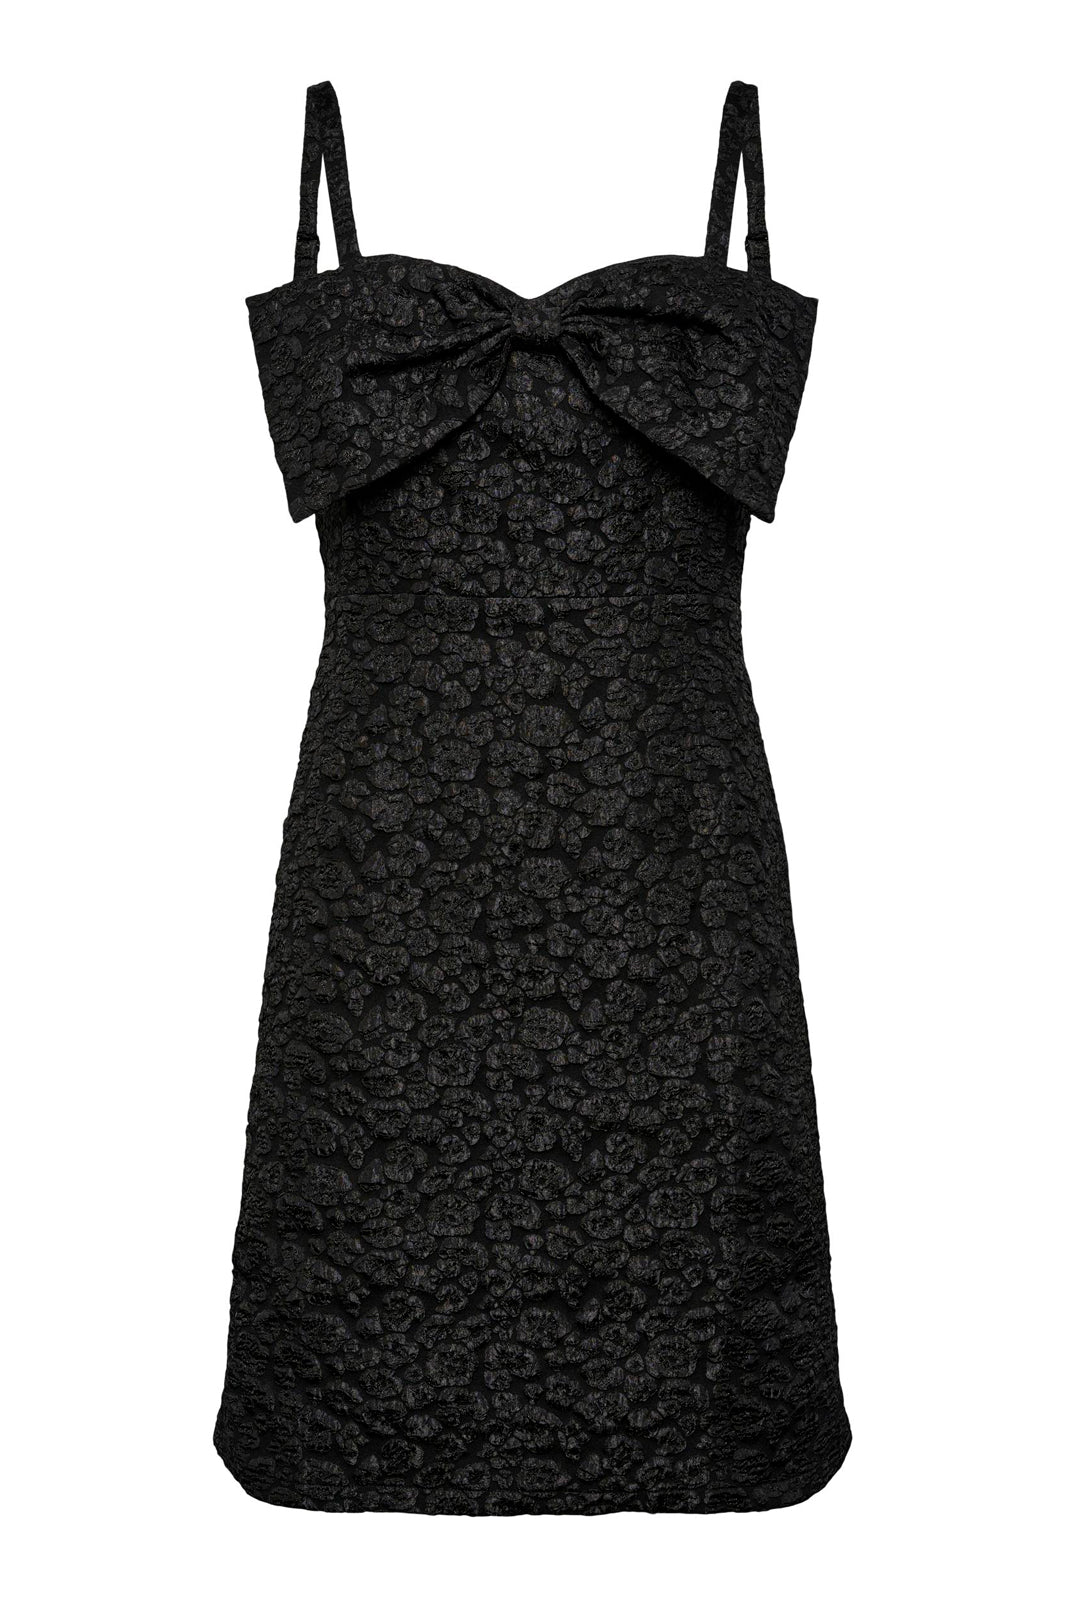 Y.A.S - Yaslumia Sl Short Dress - Black 